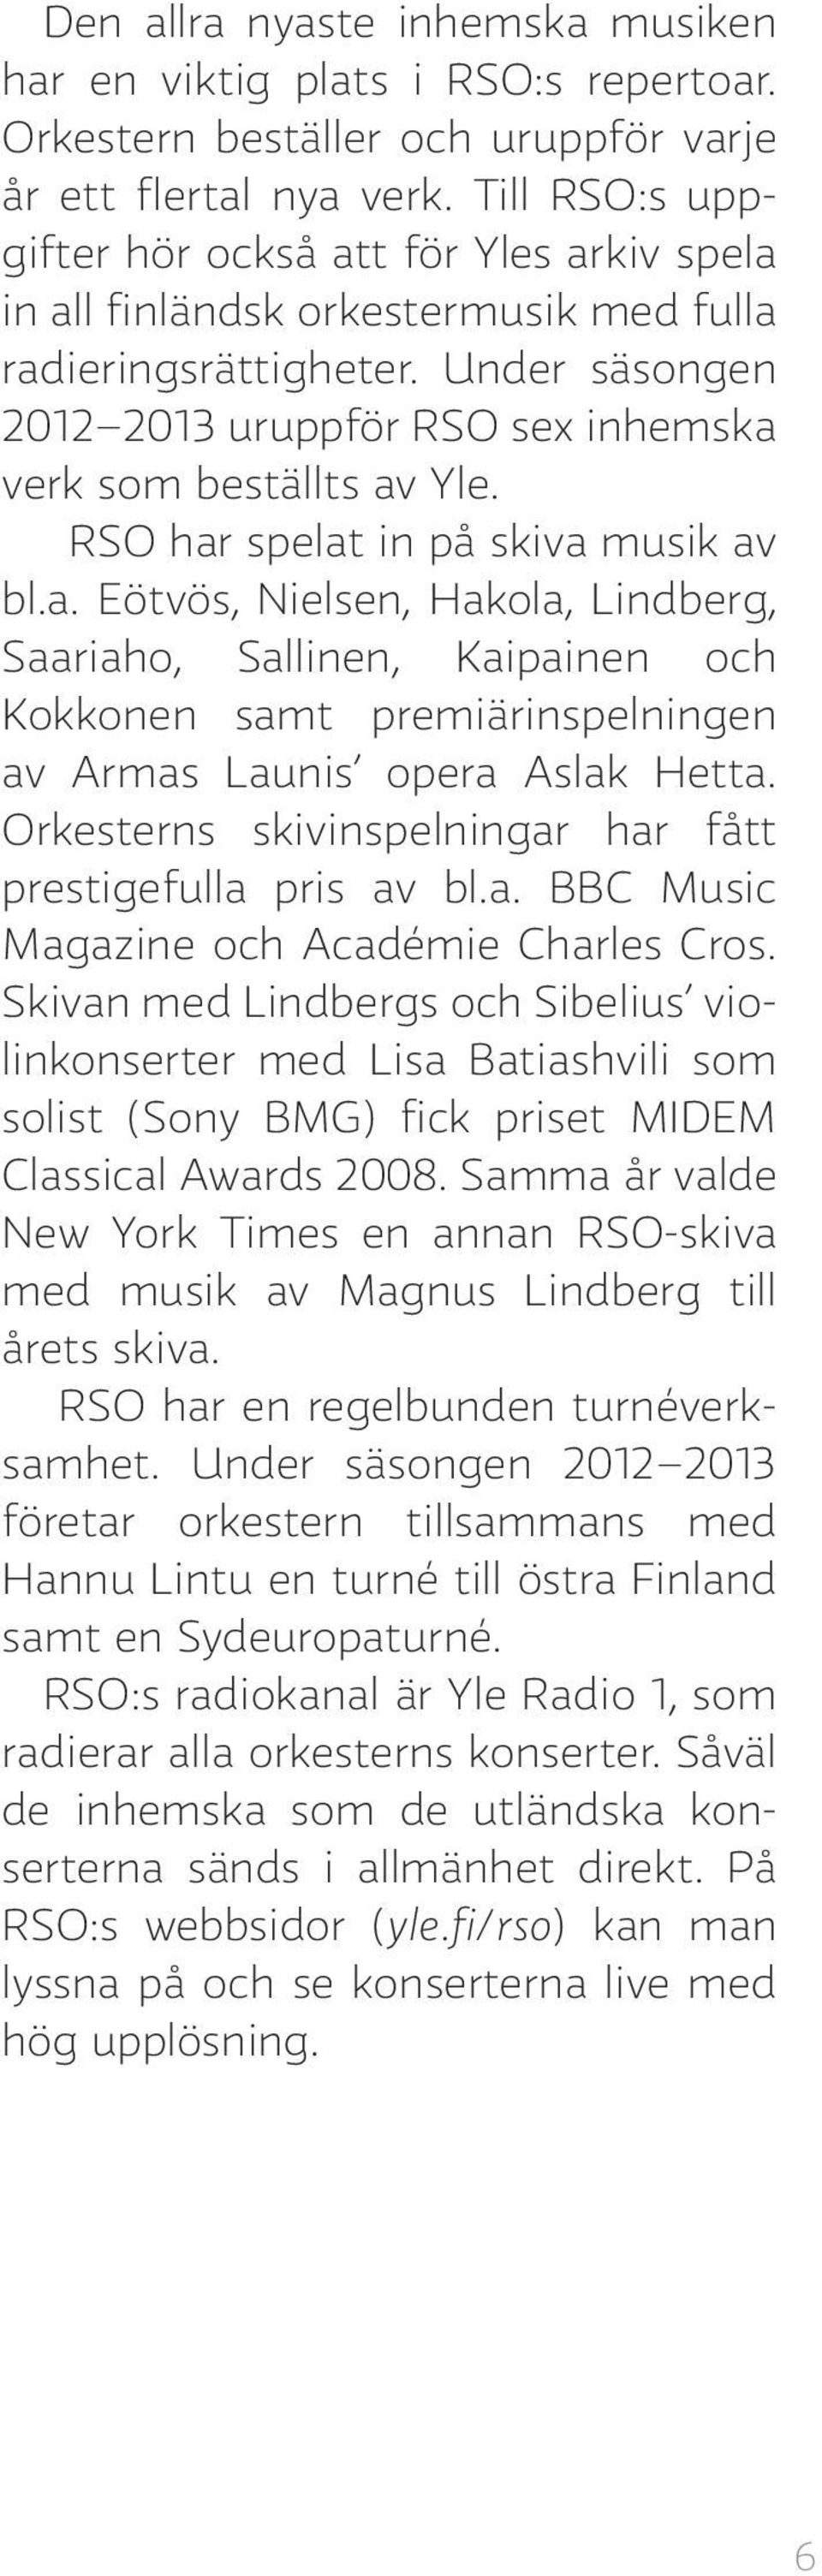 RSO har spelat in på skiva musik av bl.a. Eötvös, Nielsen, Hakola, Lindberg, Saariaho, Sallinen, Kaipainen och Kokkonen samt premiärinspelningen av Armas Launis opera Aslak Hetta.